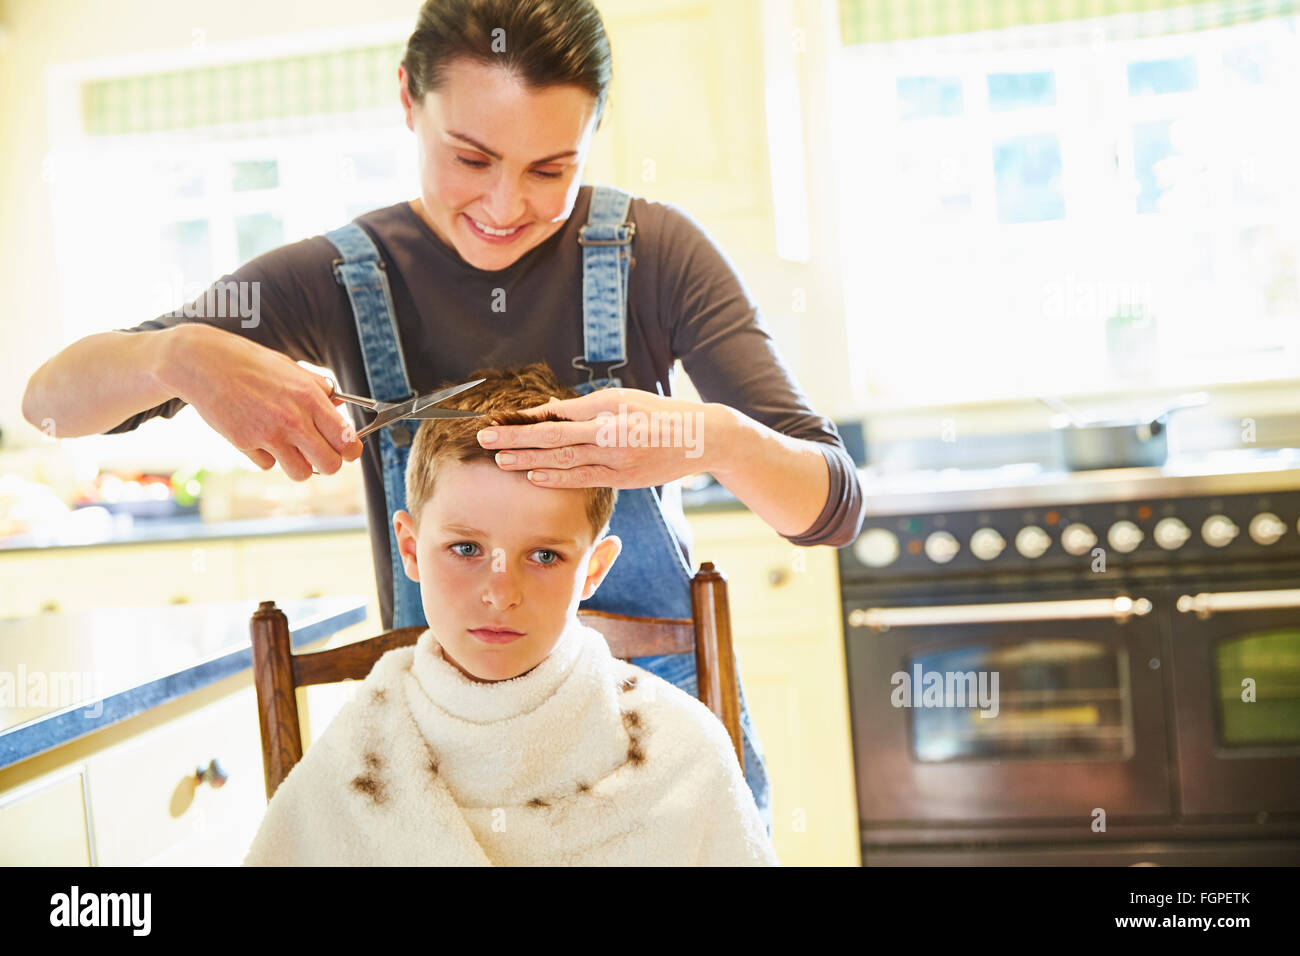 Infelice ragazzo getting taglio di capelli da madre in cucina Foto Stock